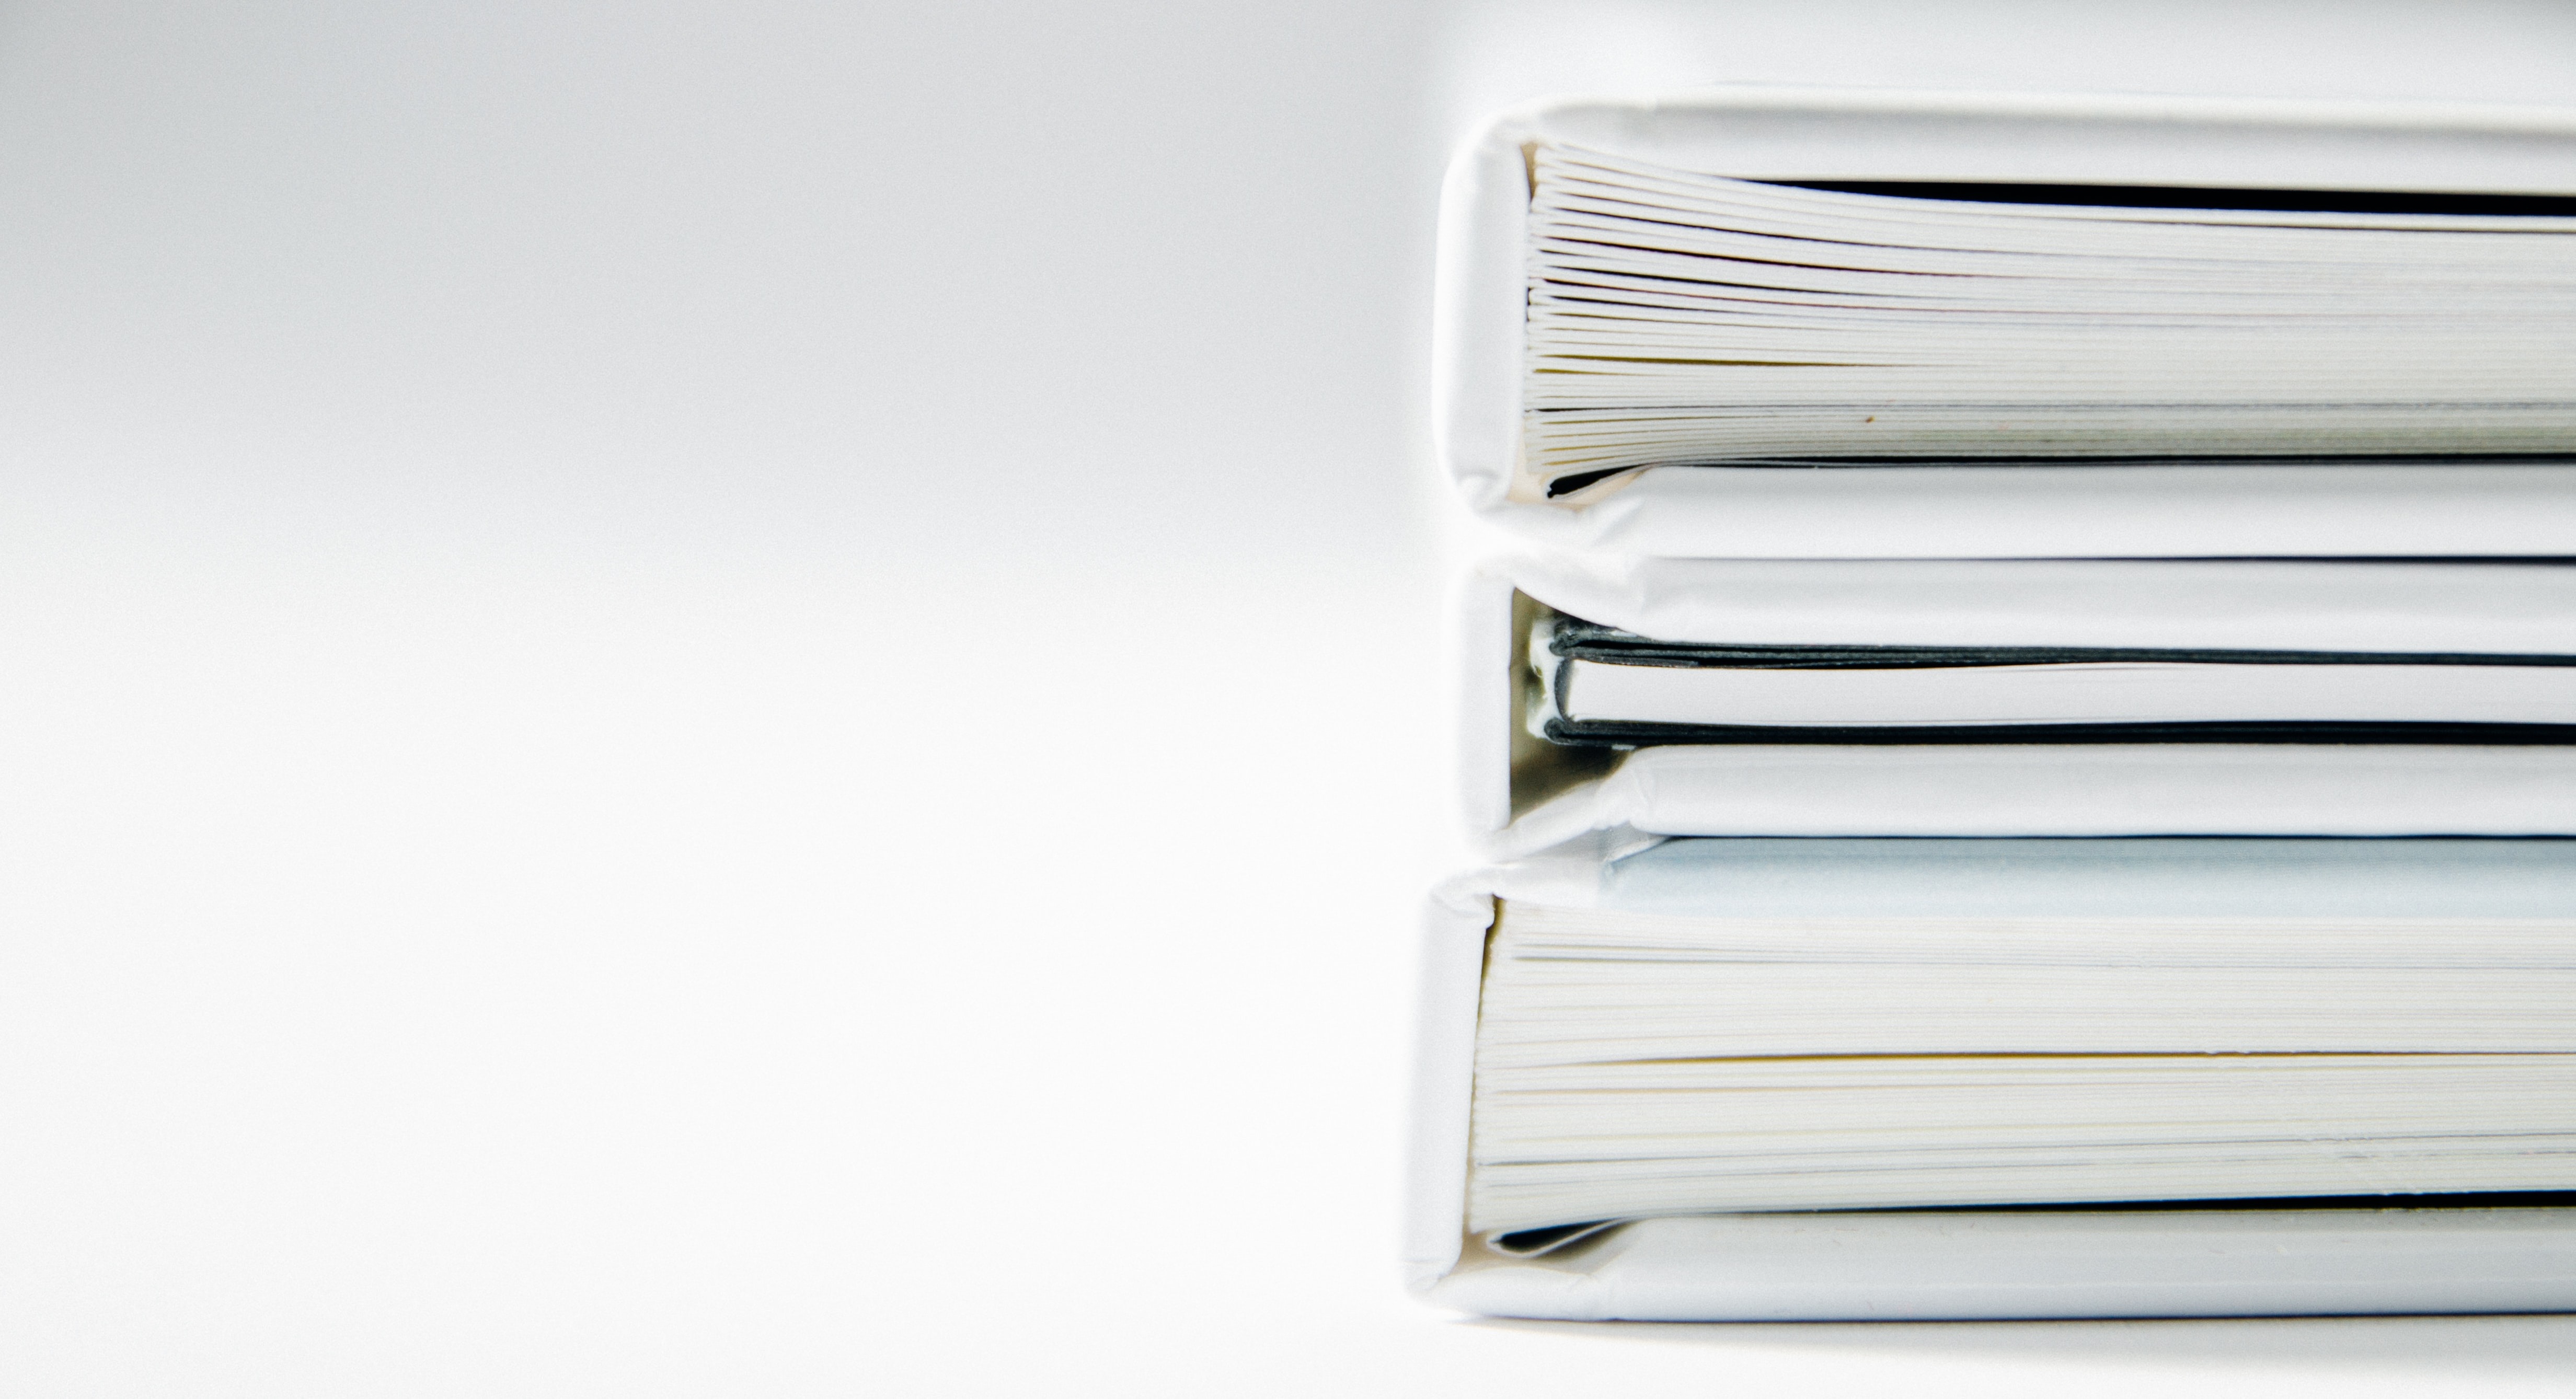 Cómo archivar documentos: 8 consejos para organizarlos